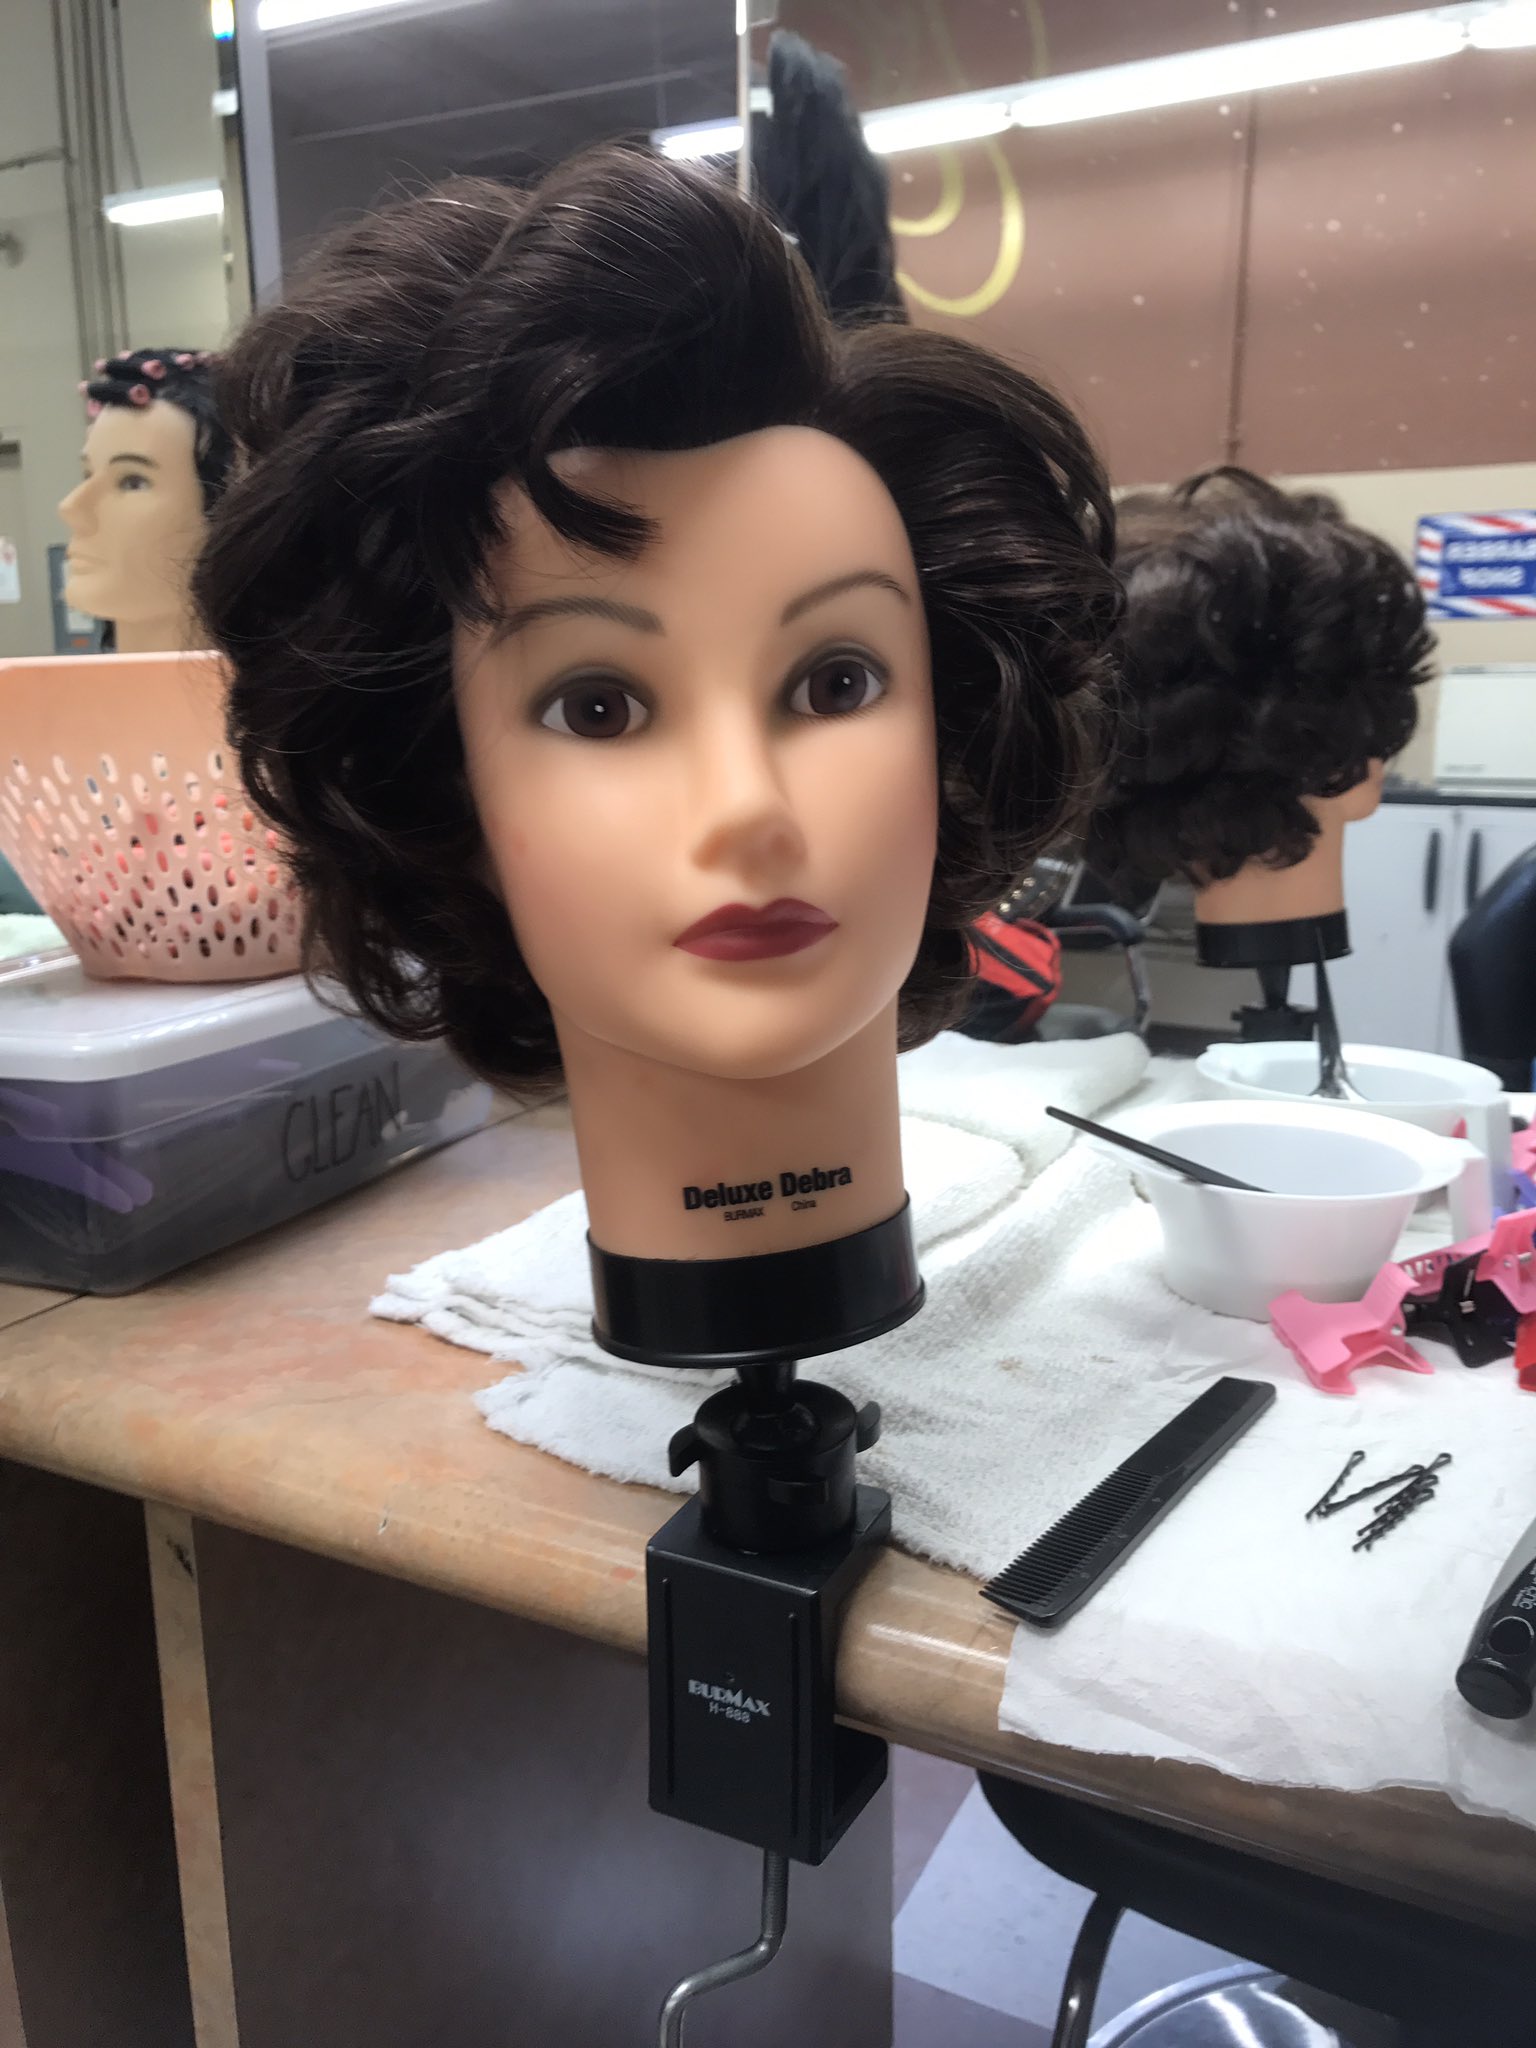 Keila Dankel on X: More boring mannequin head looks today. Debra is  serving 💃🏻💇🏻  / X